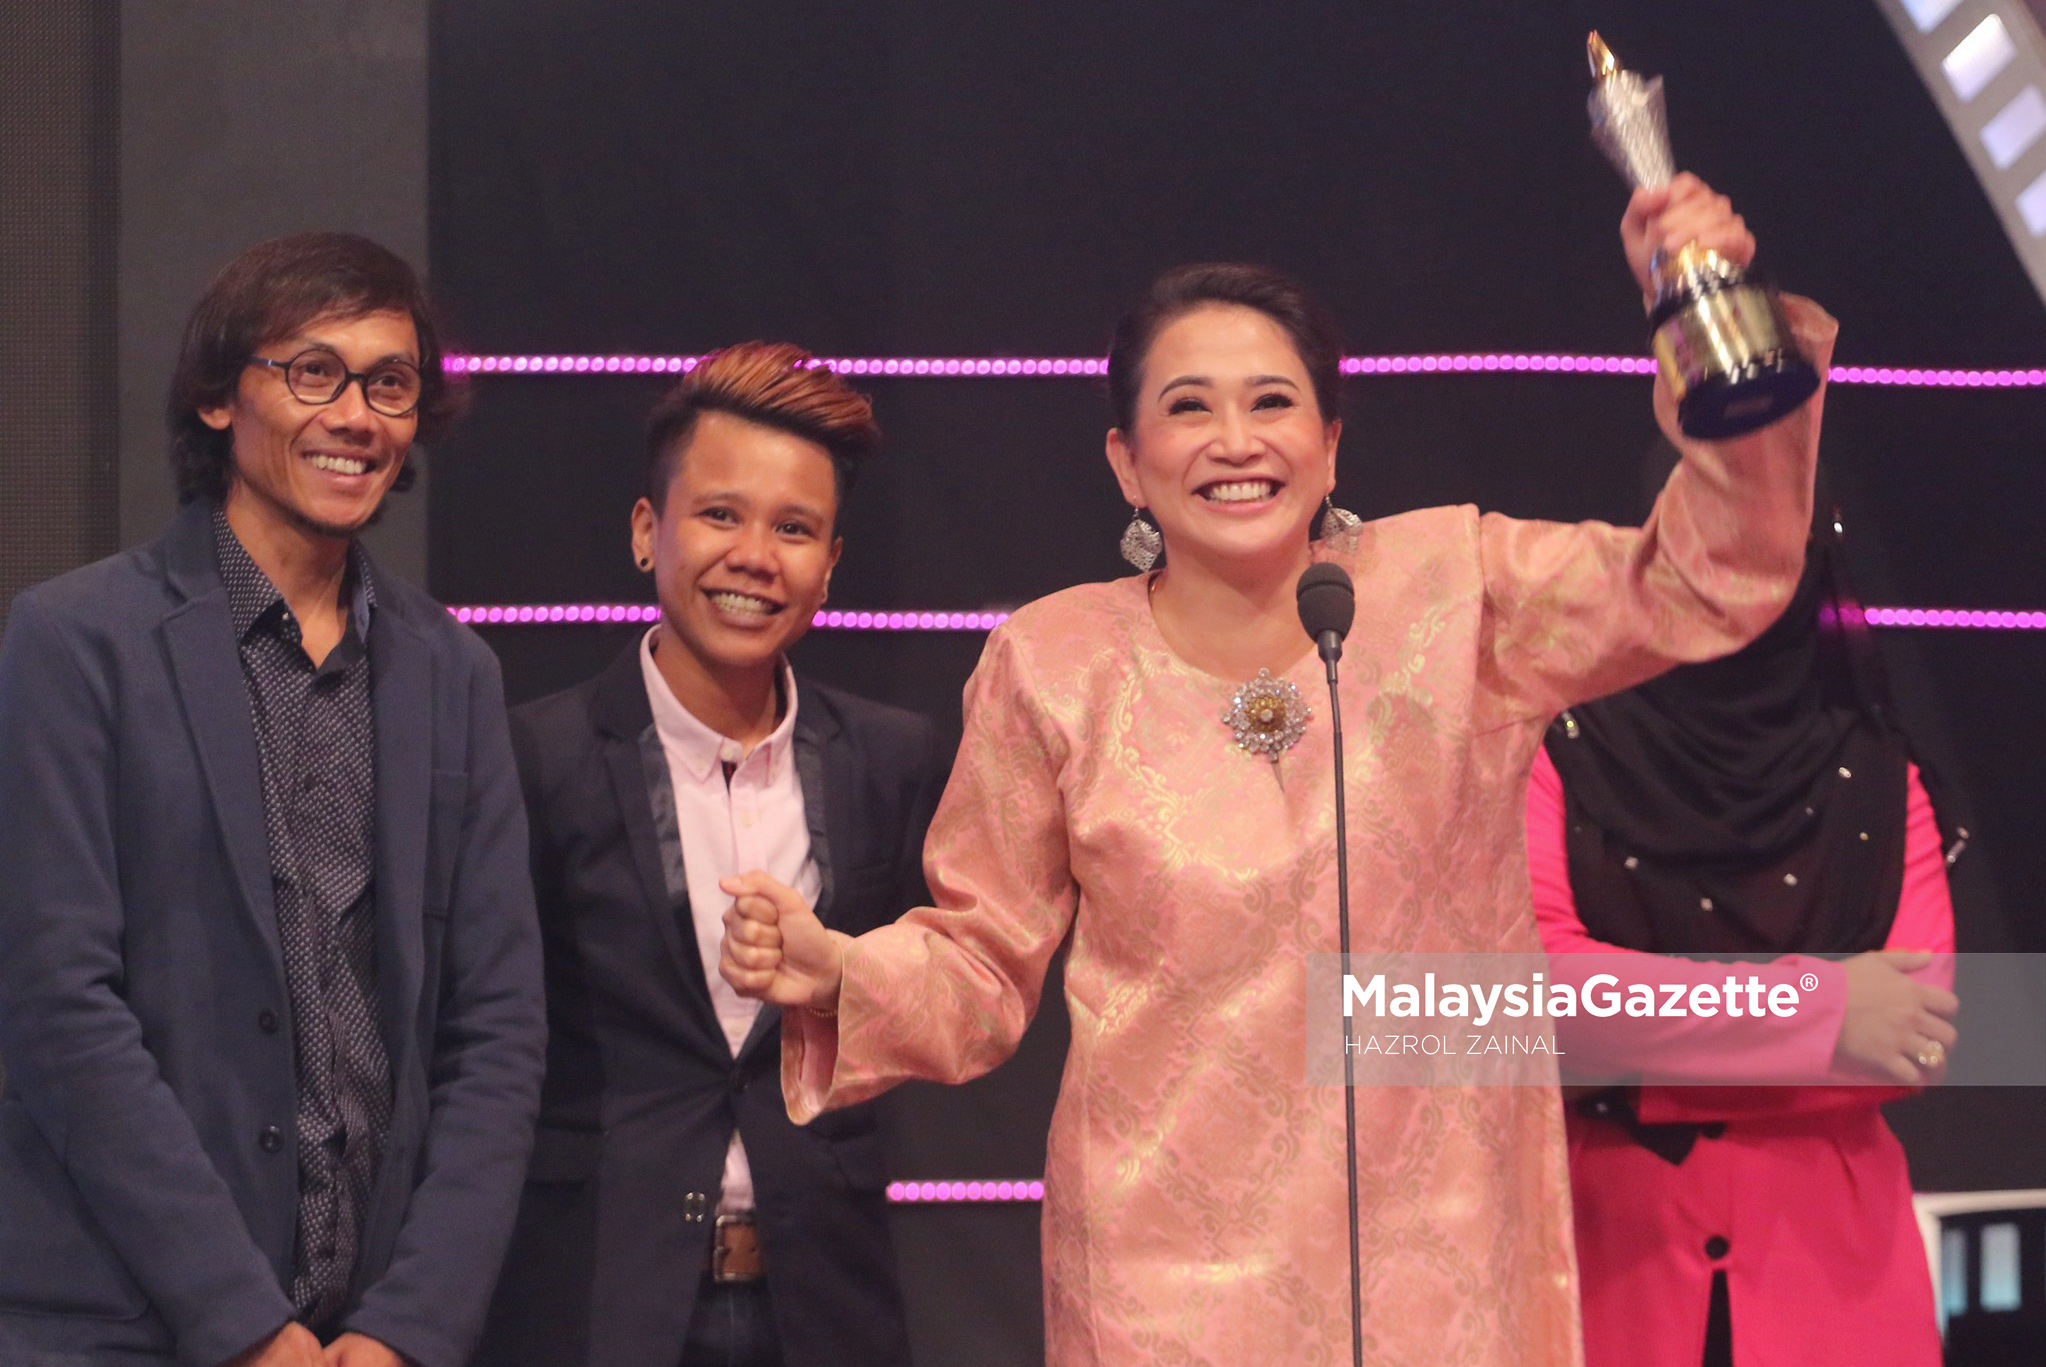 Pelakon Dira Abu Zahar (kanan) menyampaikan ucapan selepas merangkul Anugerah Telefilem Terbaik yang merupakan antara anugerah utama pada Anugerah Kaseh Tribute P.Ramlee di Auditorium Perdana Angkasapuri, Kuala Lumpur. foto MOHD HAZROL ZAINAL, 04 MAC 2017.